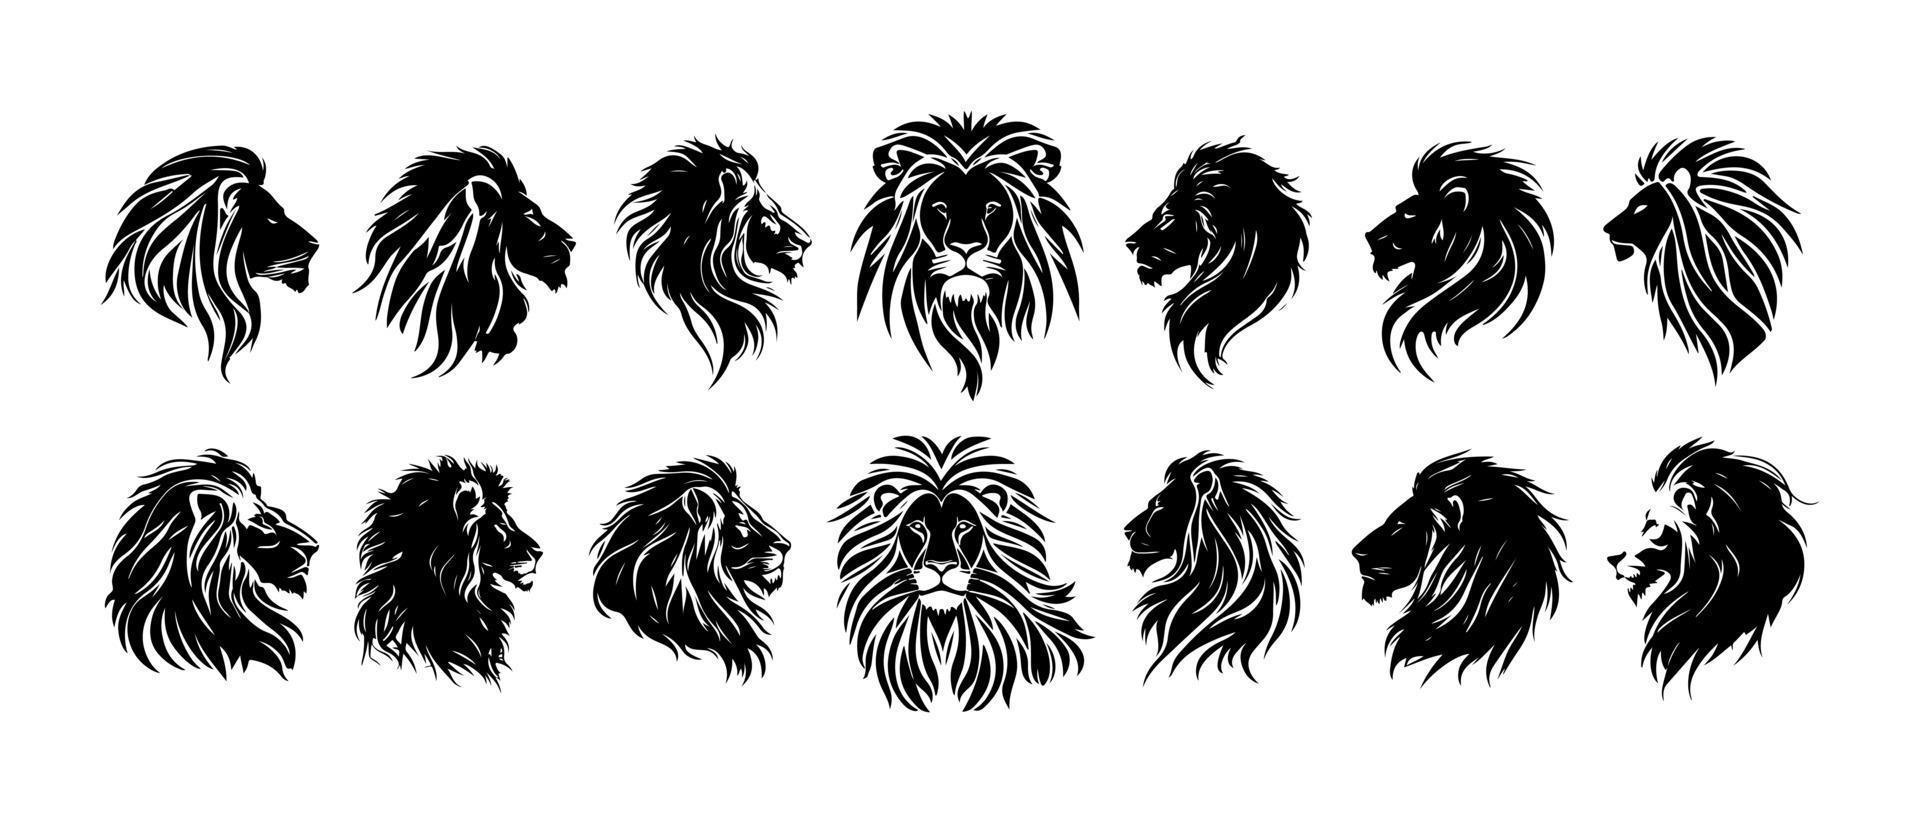 Leone testa viso logo impostato silhouette nero icona tatuaggio portafortuna mano disegnato Leone re silhouette animale vettore illustrazione